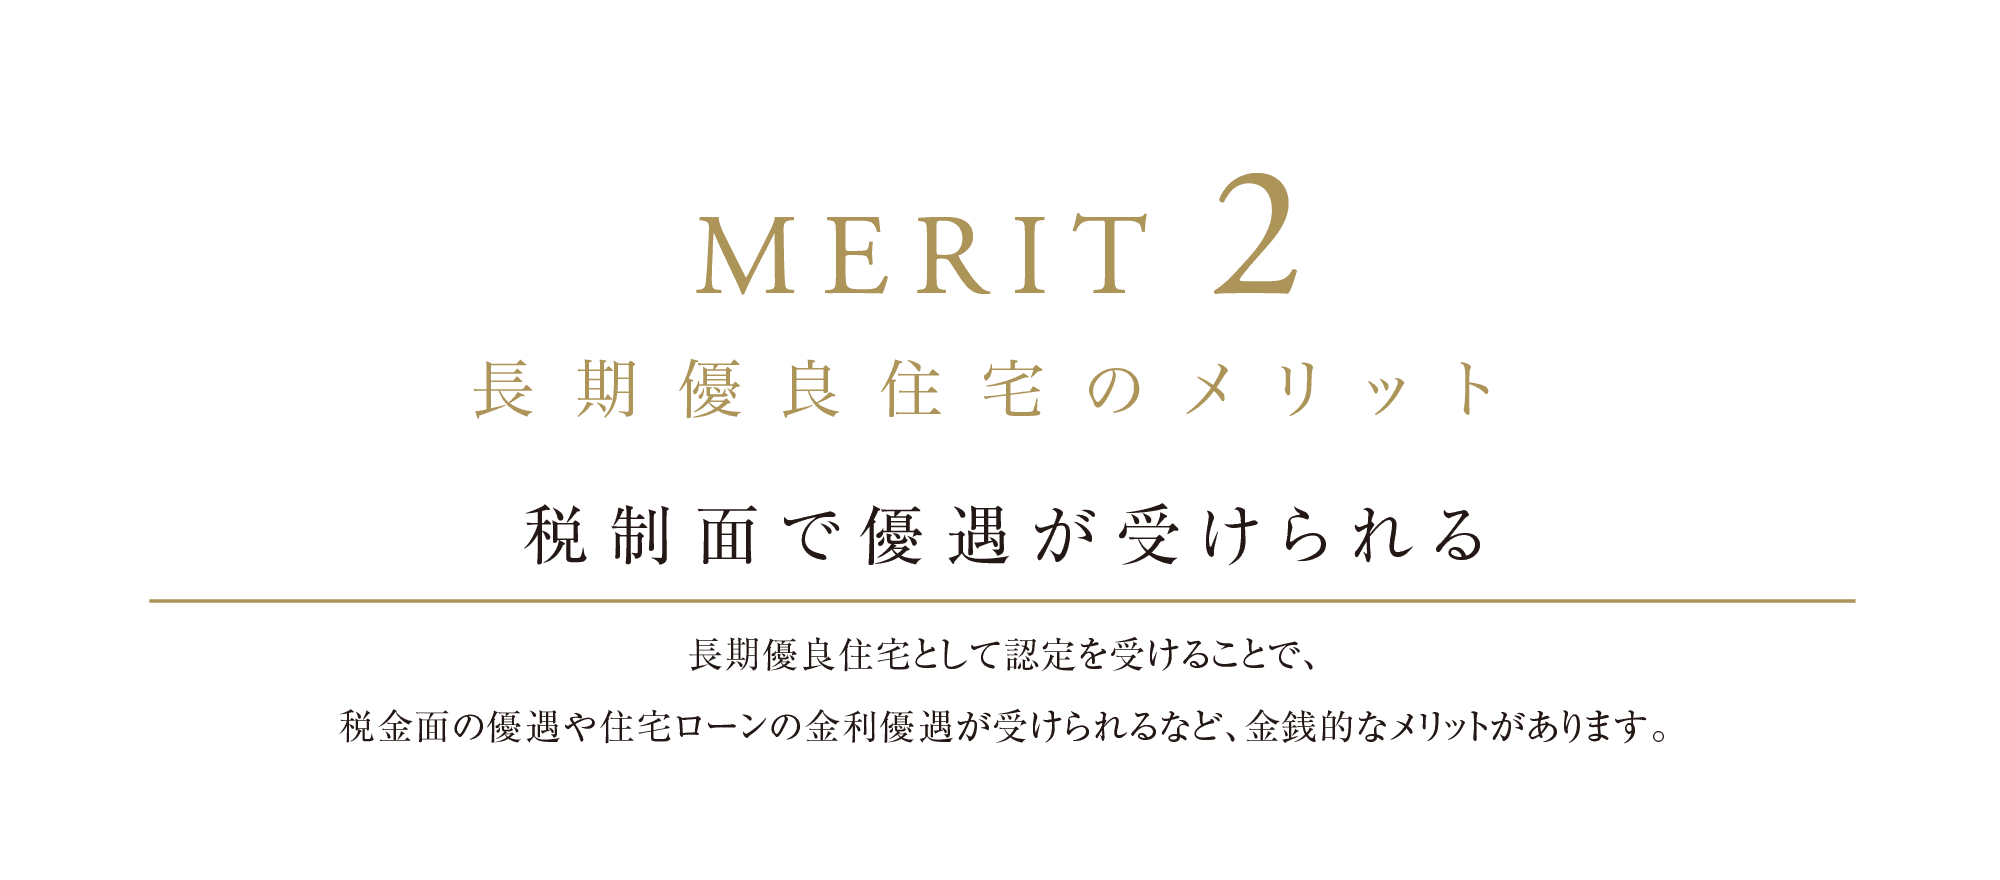 MERIT 2 長期優良住宅のメリット